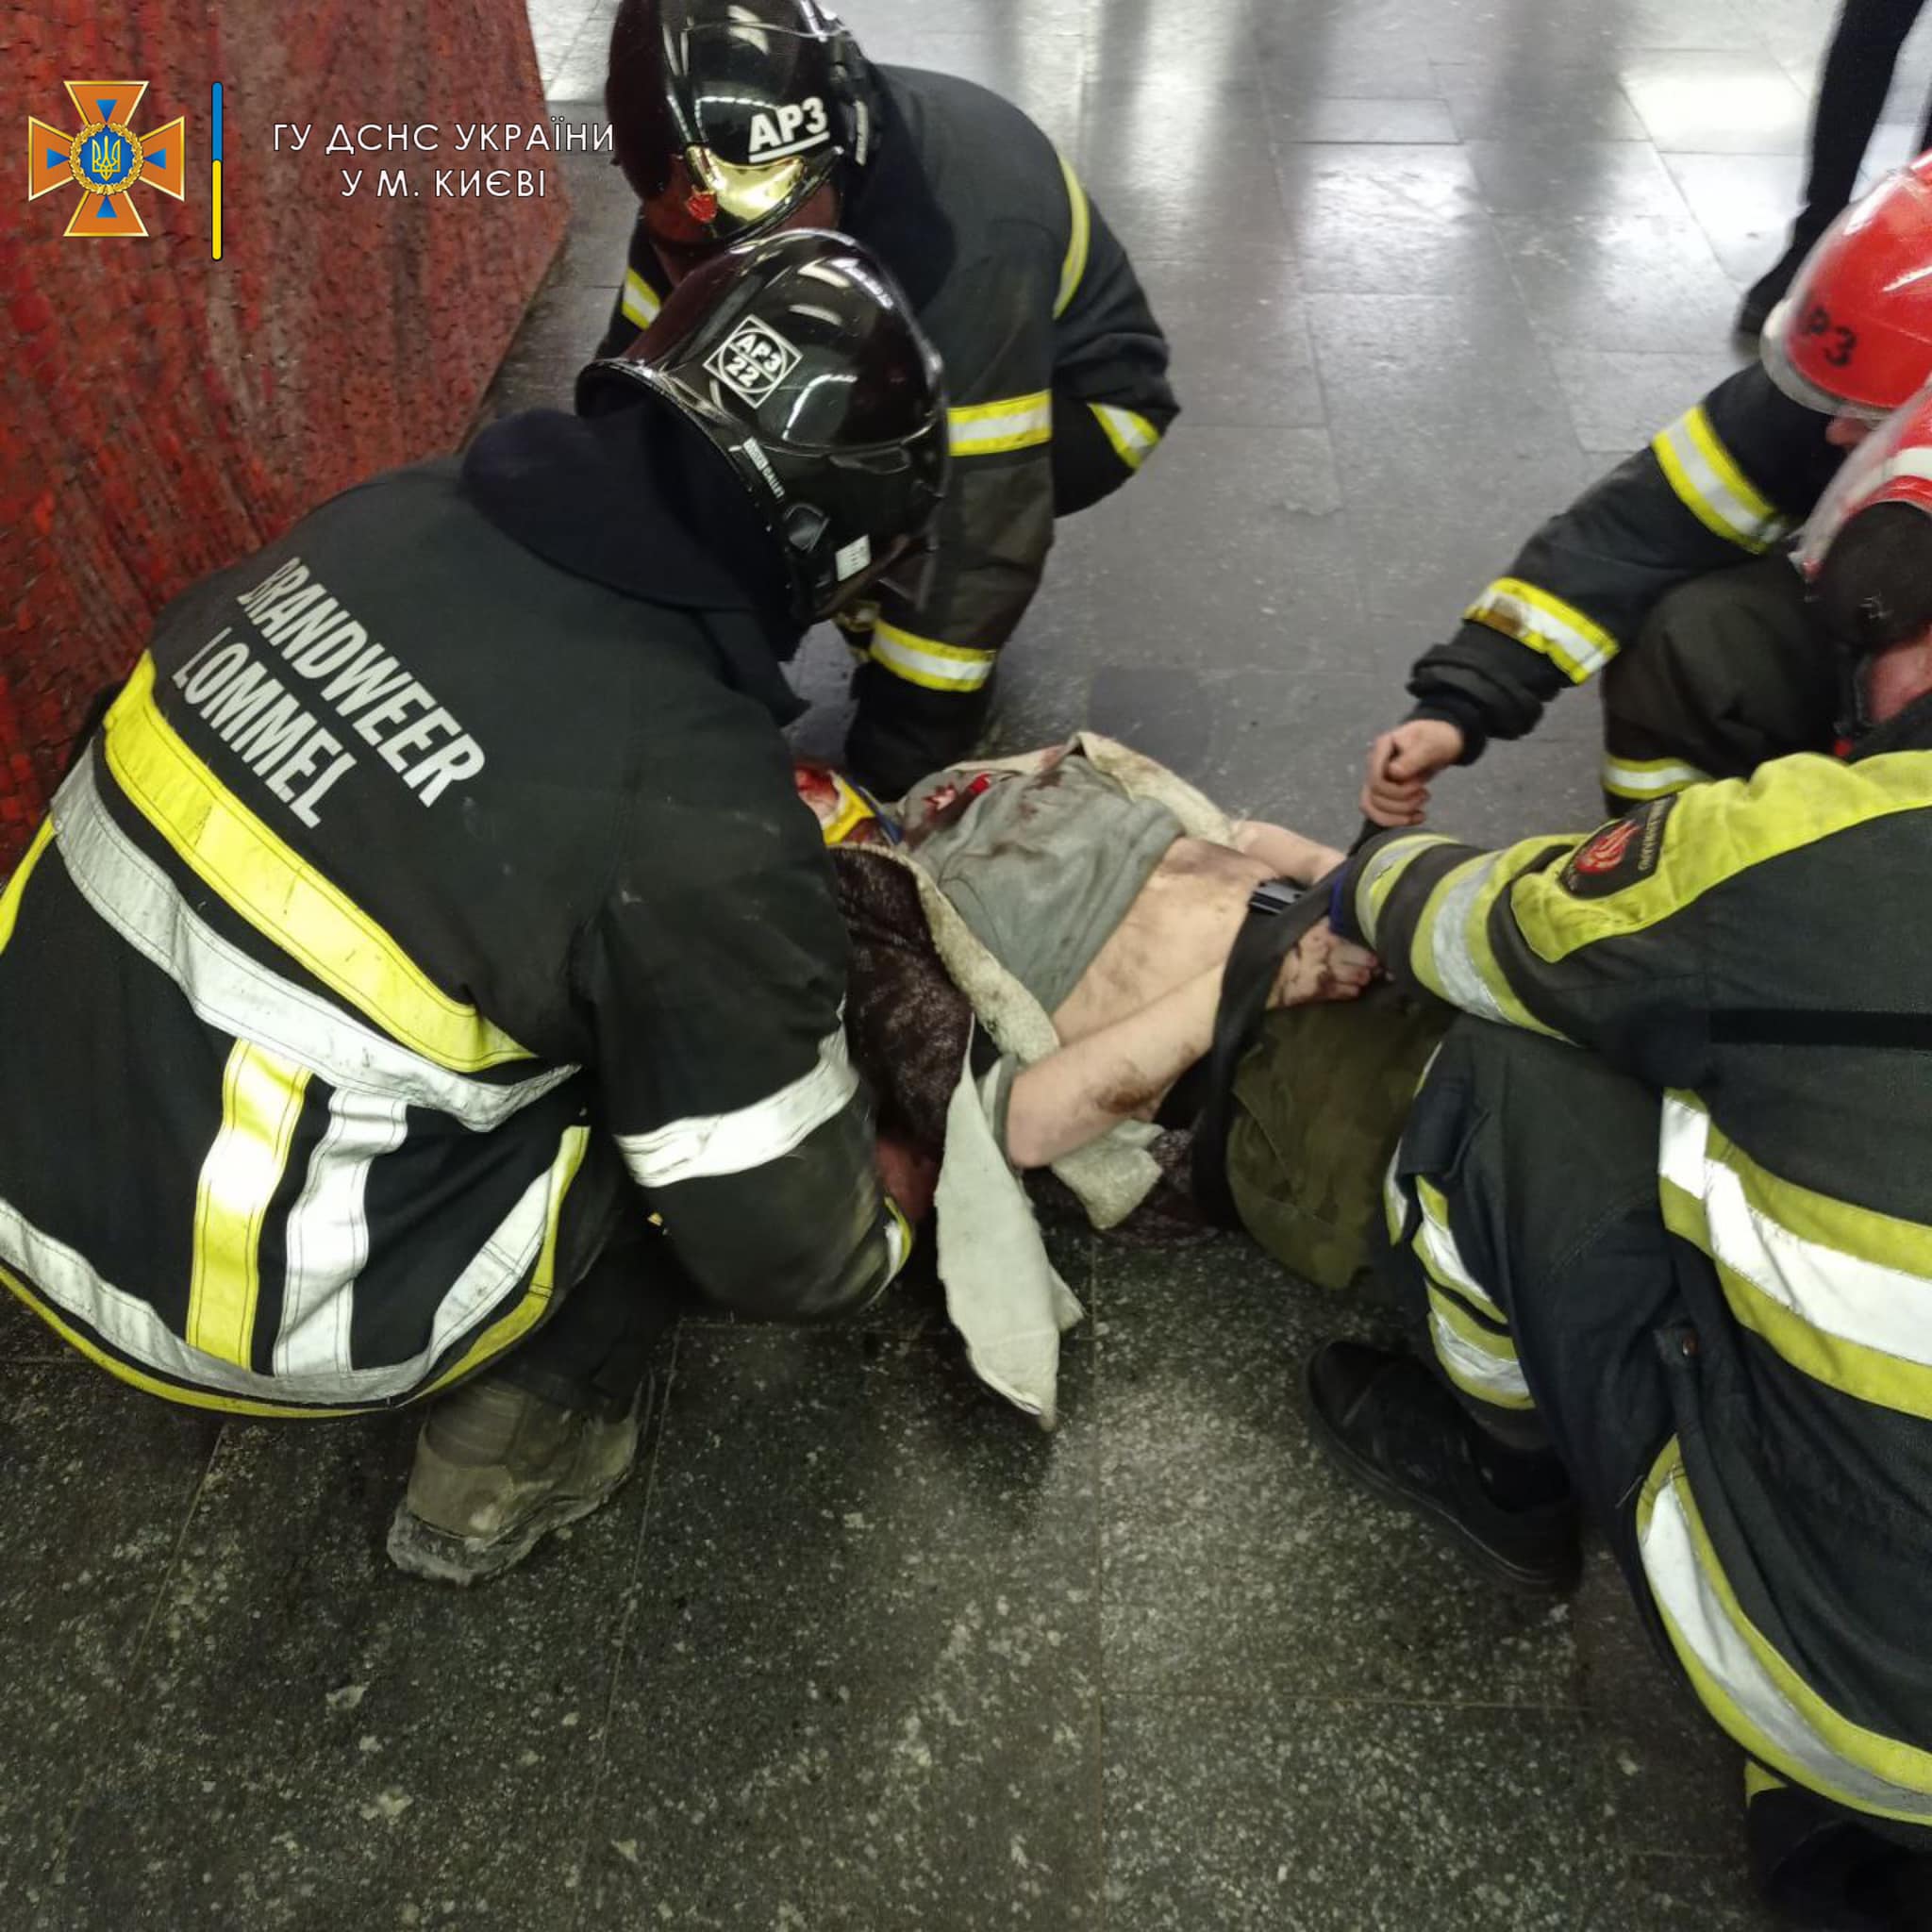 Жінку, яка впала під потяг у метро Києва, деблокували рятувальники. Вона жива: відео, фото